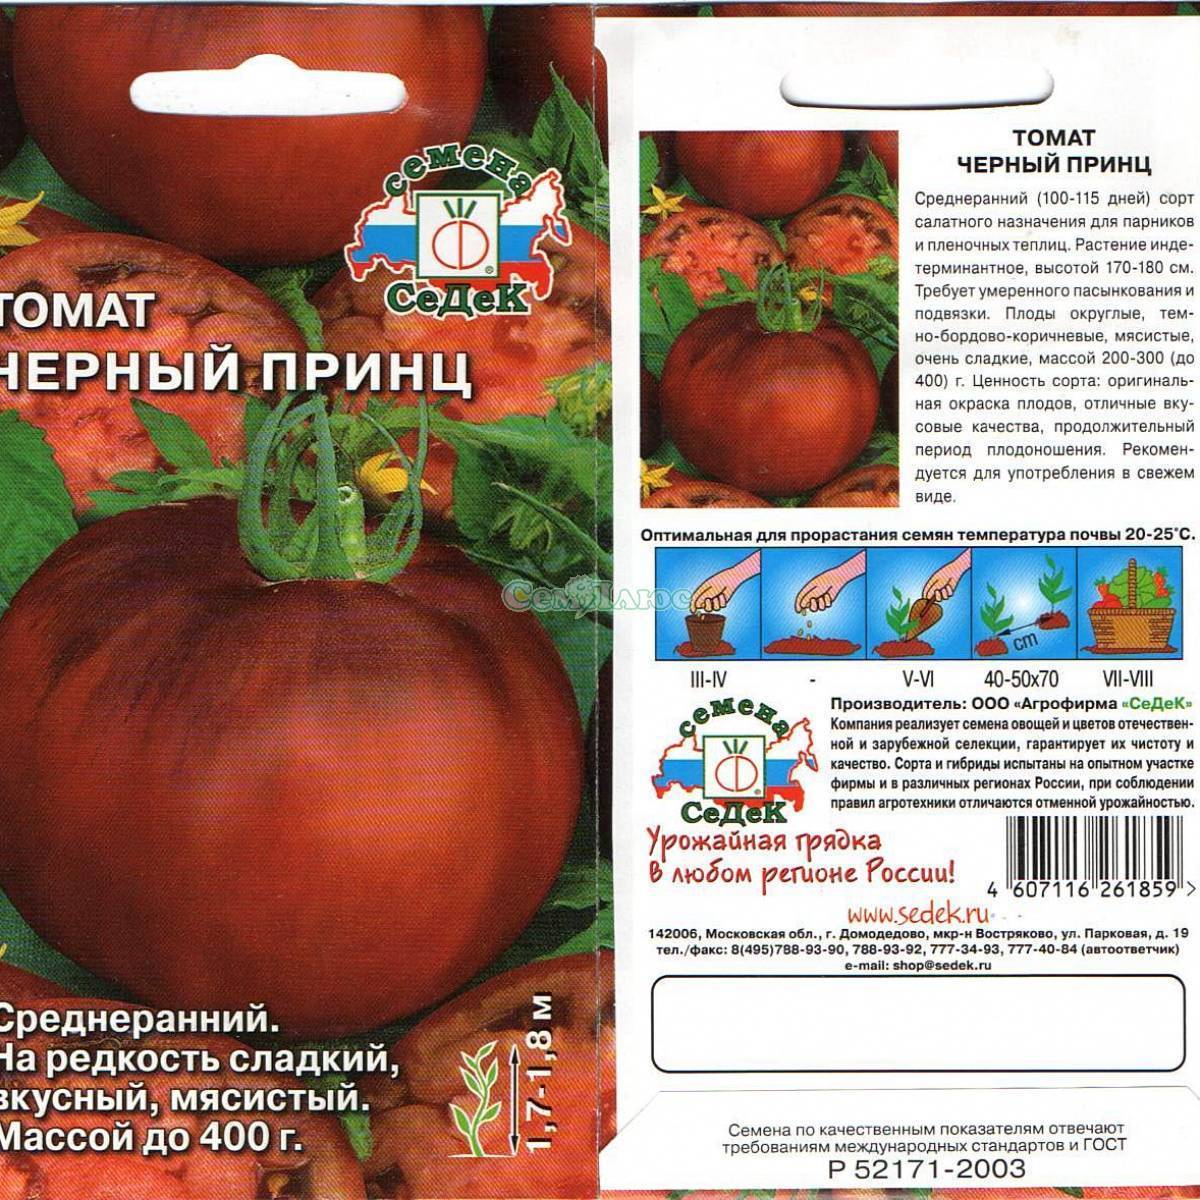 Томат исполин (малиновый, черный): характеристики и описание сорта помидоров и пошаговая инструкция по его выращиванию